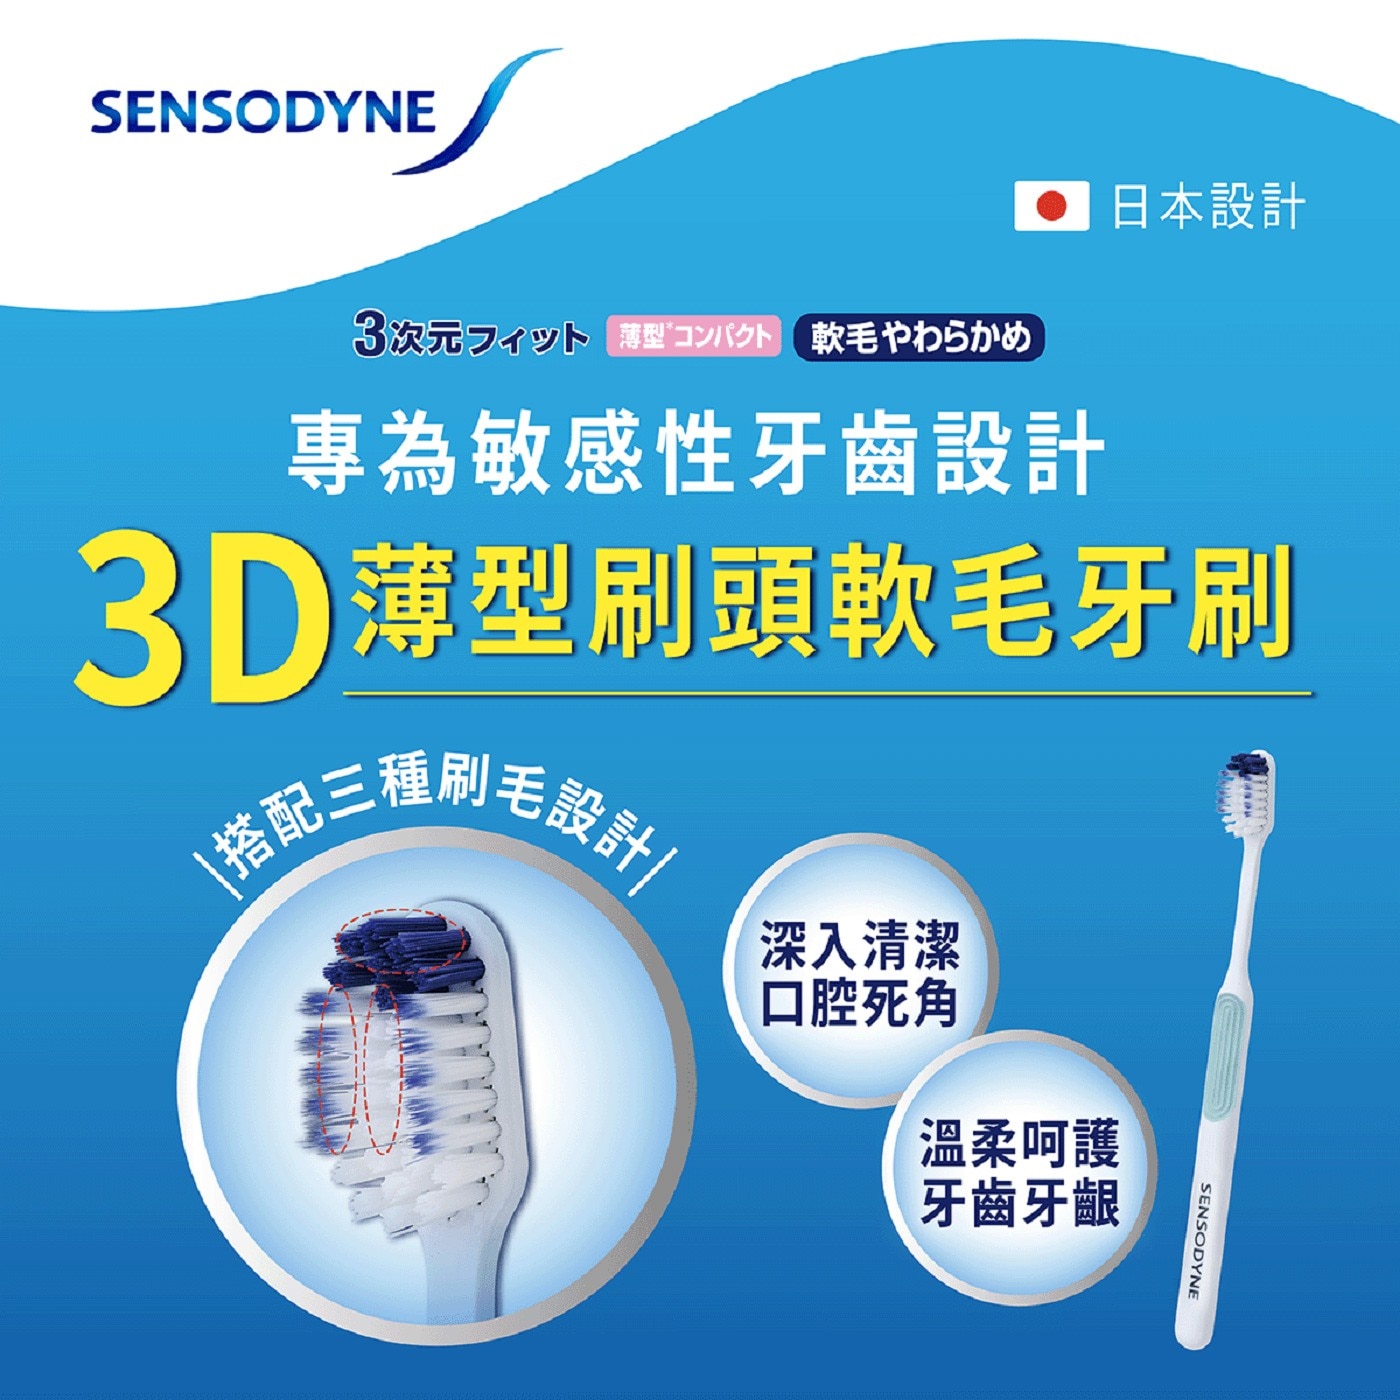 舒酸定 抗敏3D薄型刷頭軟毛牙刷，台灣牙醫專業推薦，雙重彈力刷頸，輕柔潔淨，深入牙齦溝。